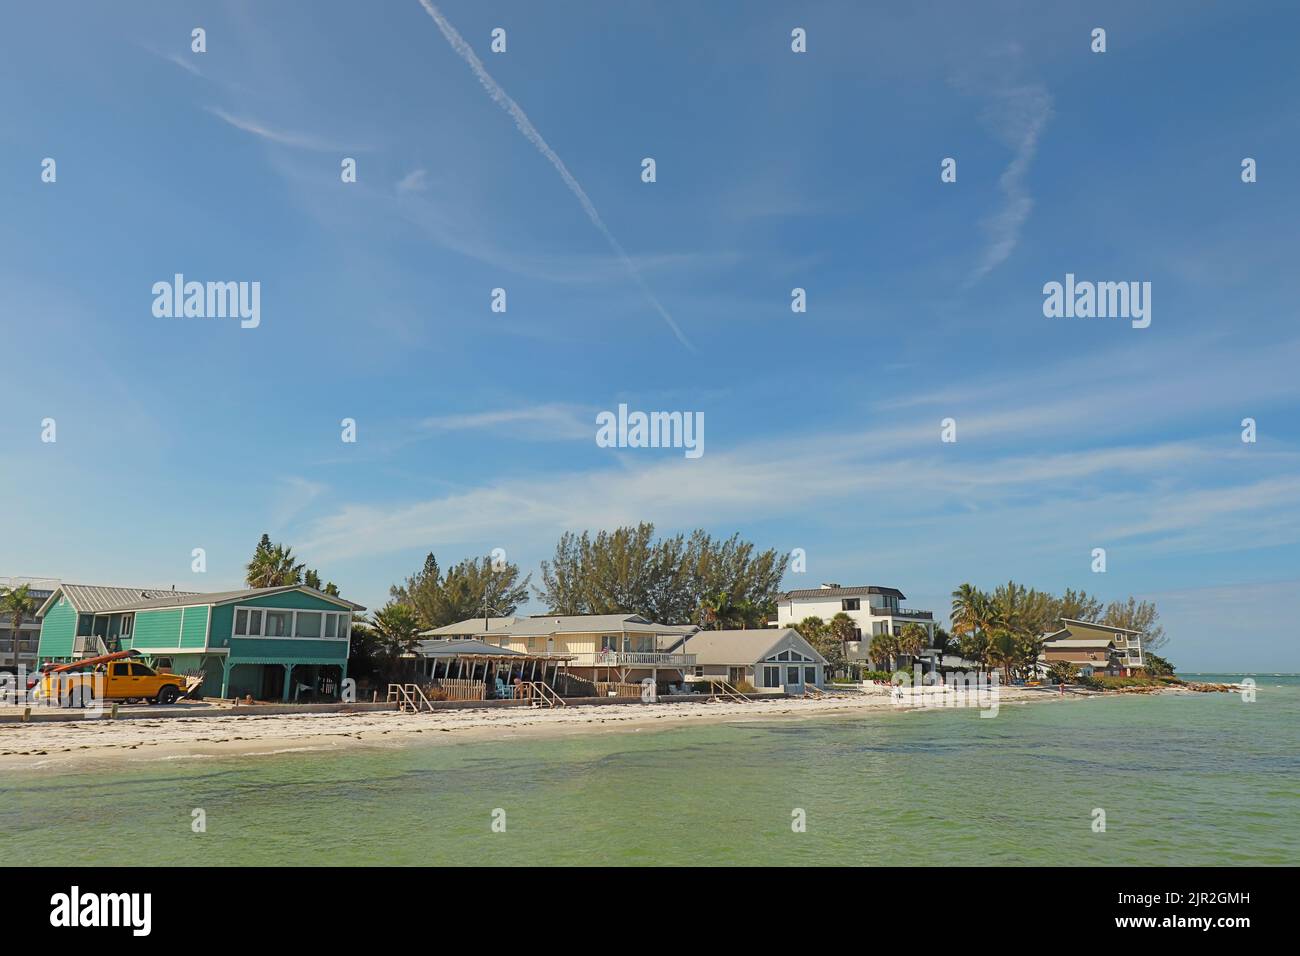 Horizonte de casas a lo largo de la playa en Bean Point en el extremo norte de la Isla Anna Maria, Florida, con gente irreconocible caminando en la arena Foto de stock